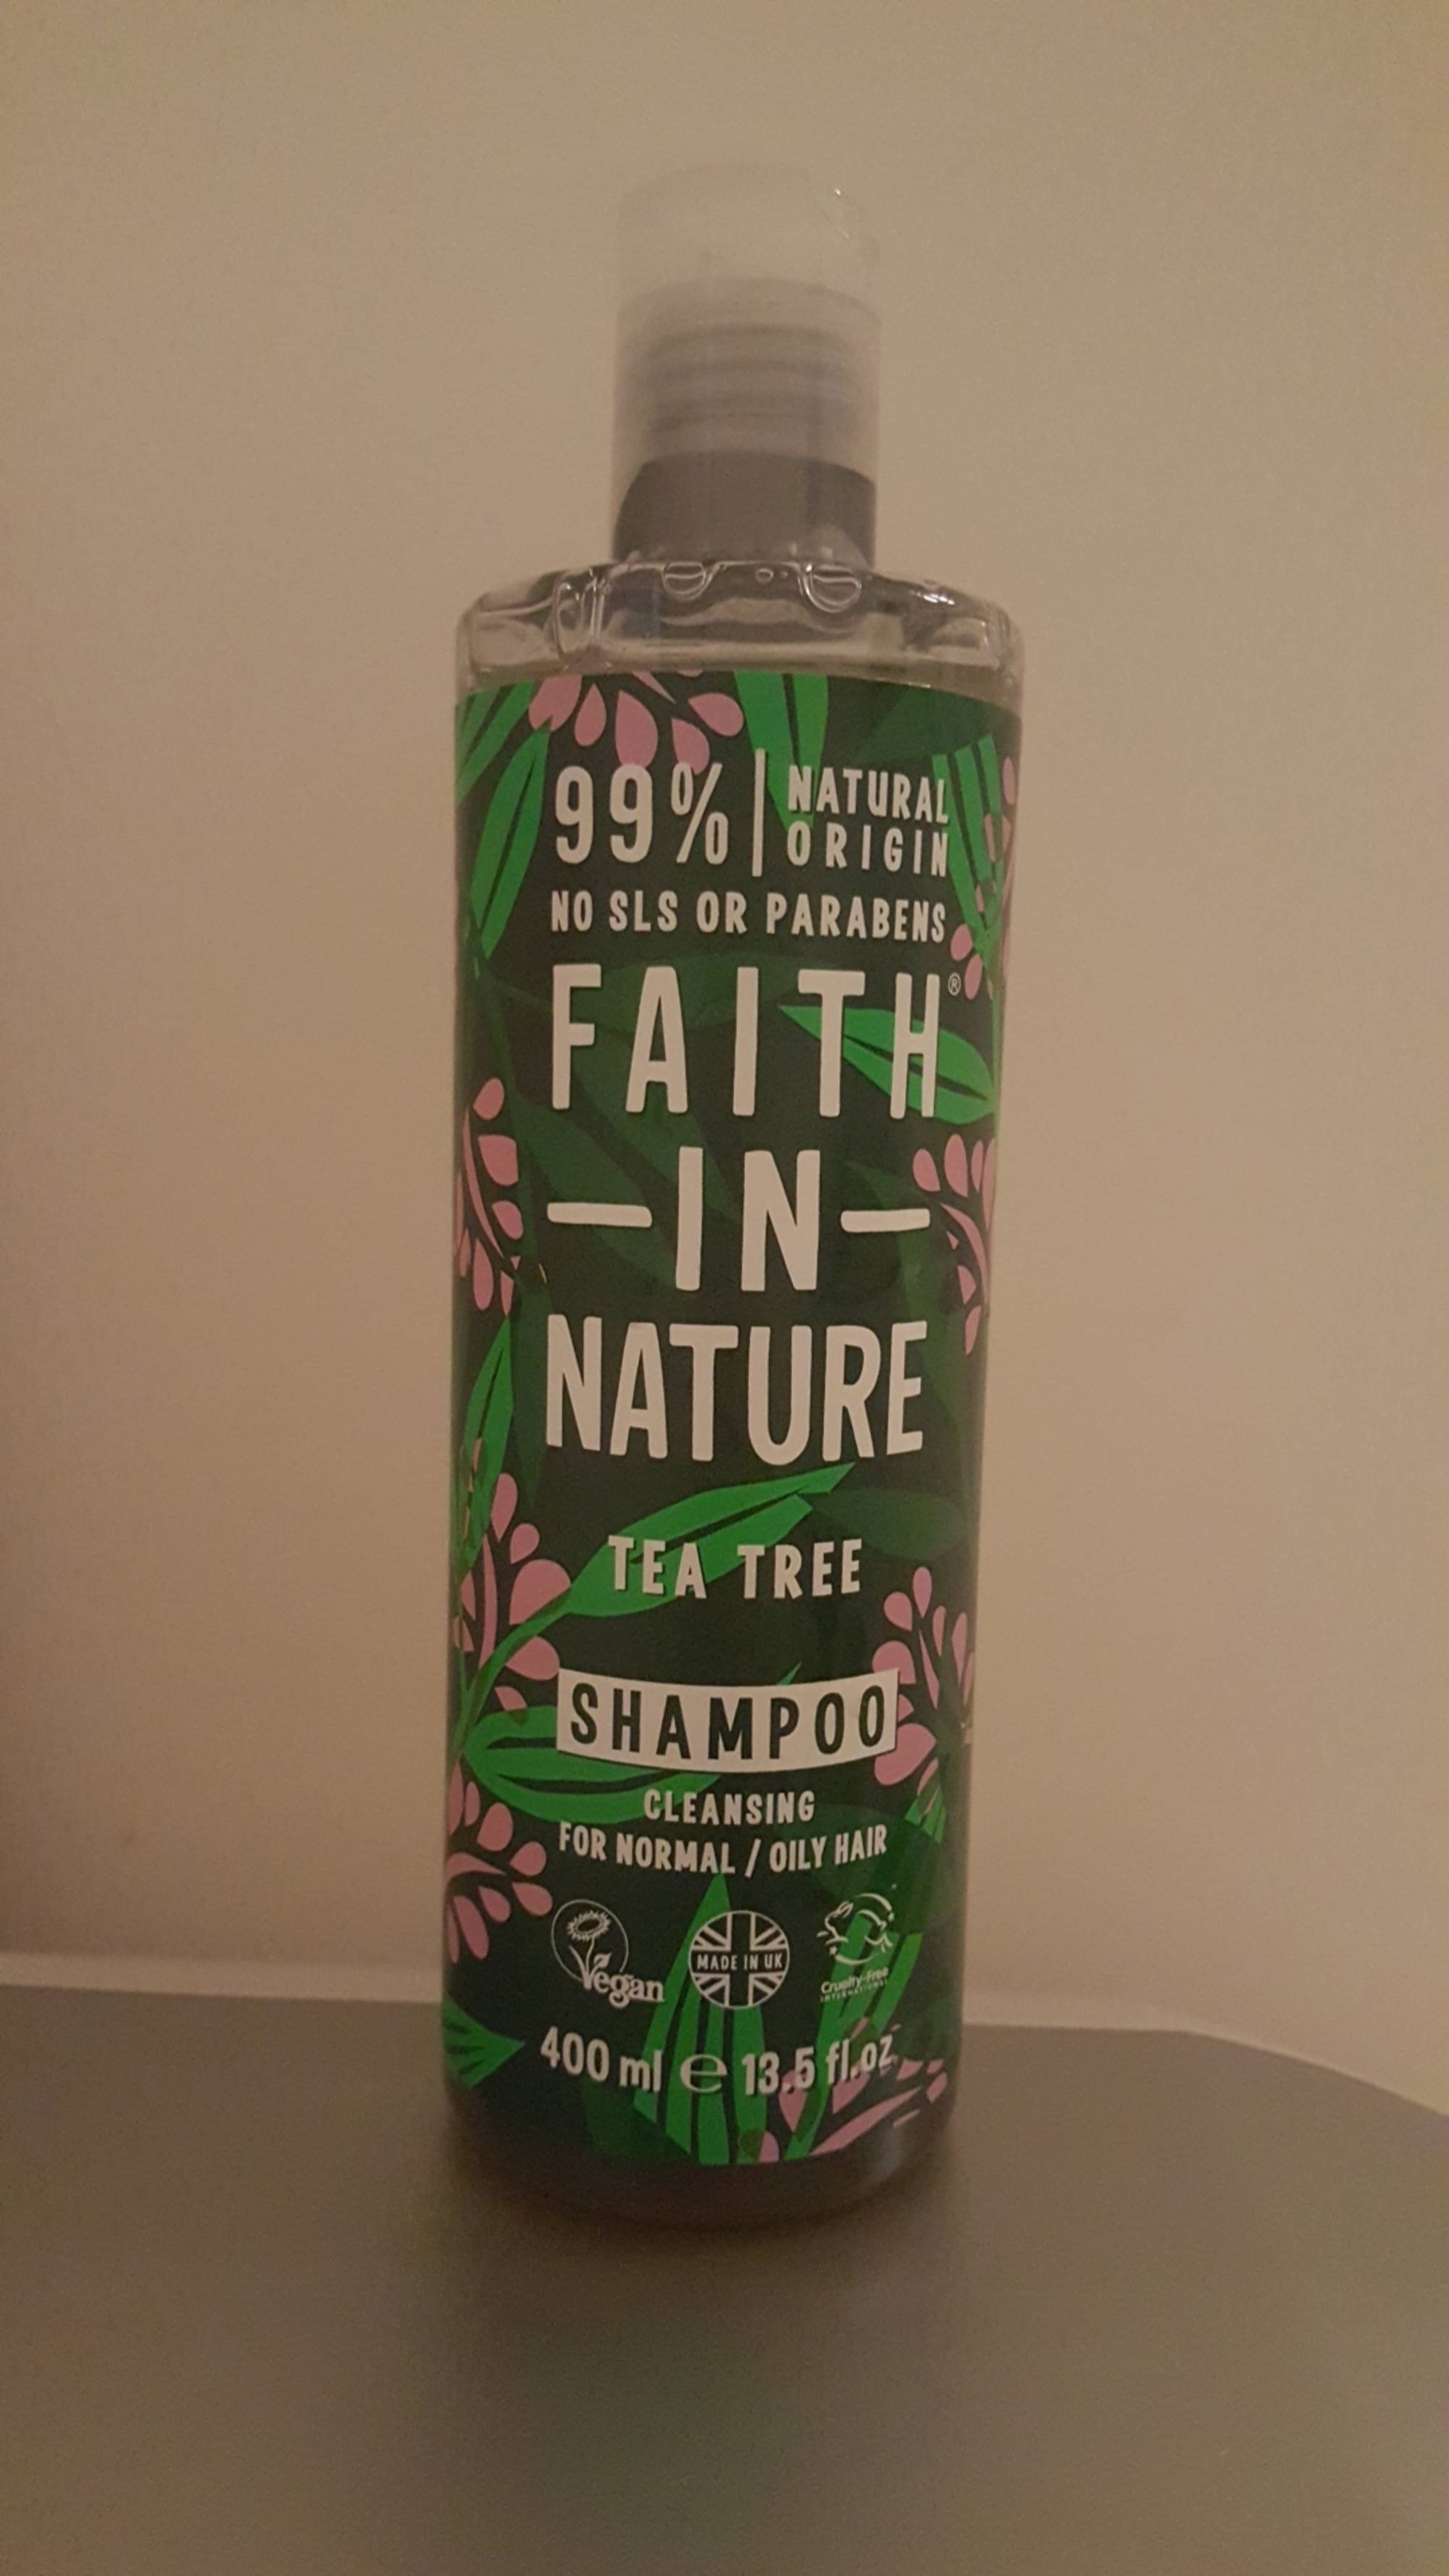 FAITH IN NATURE - Tea tree - Shampoo